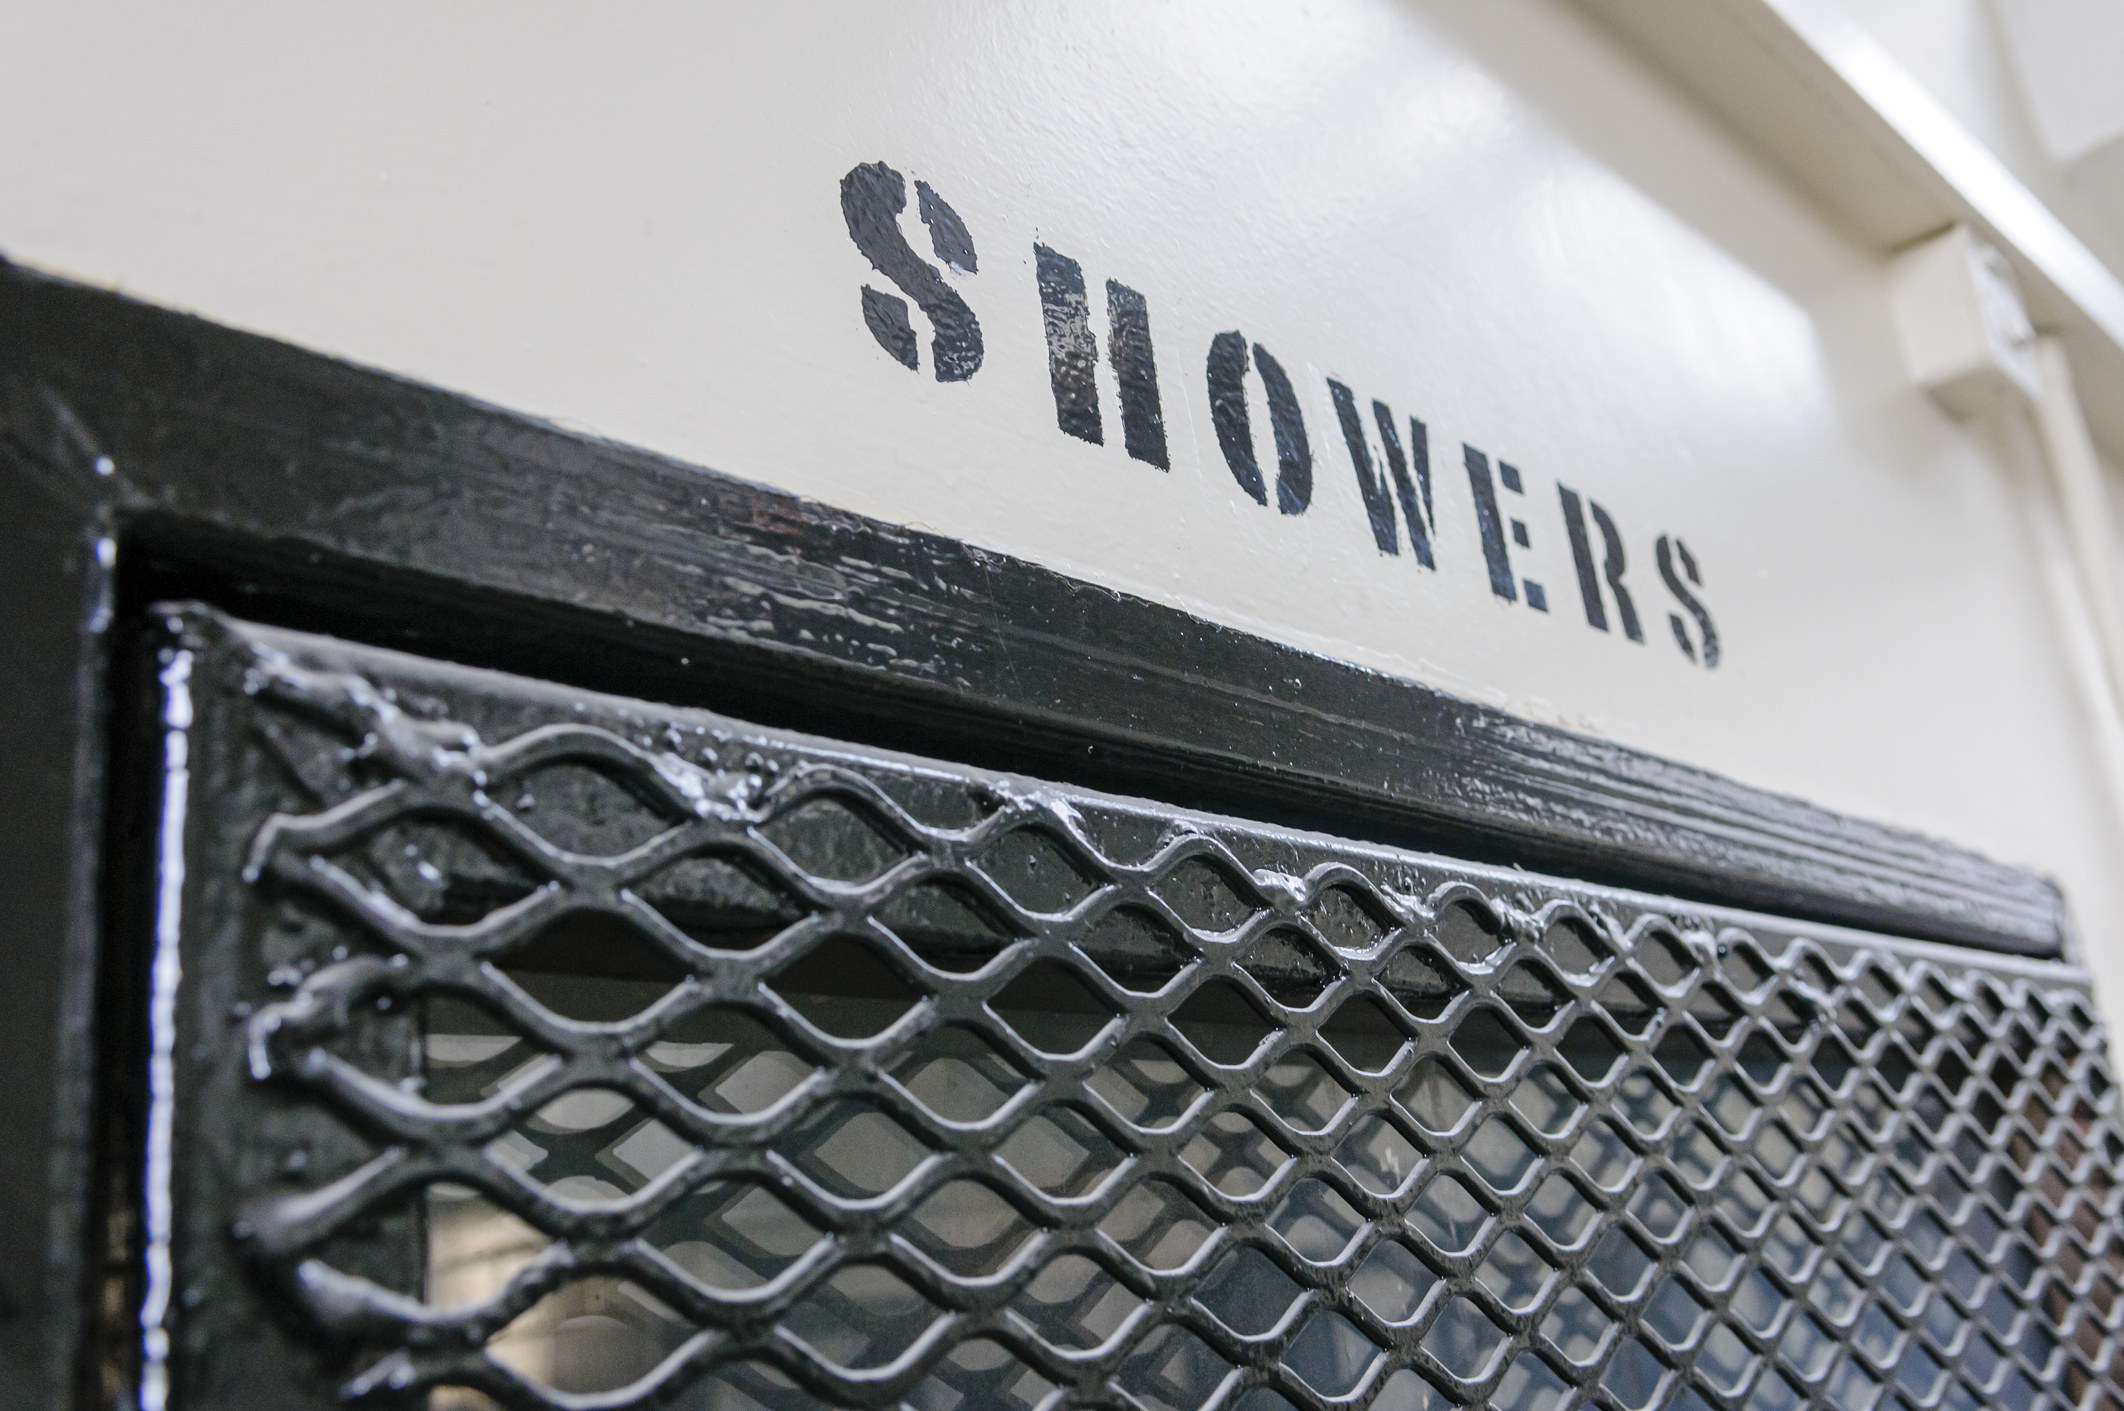 prison showers